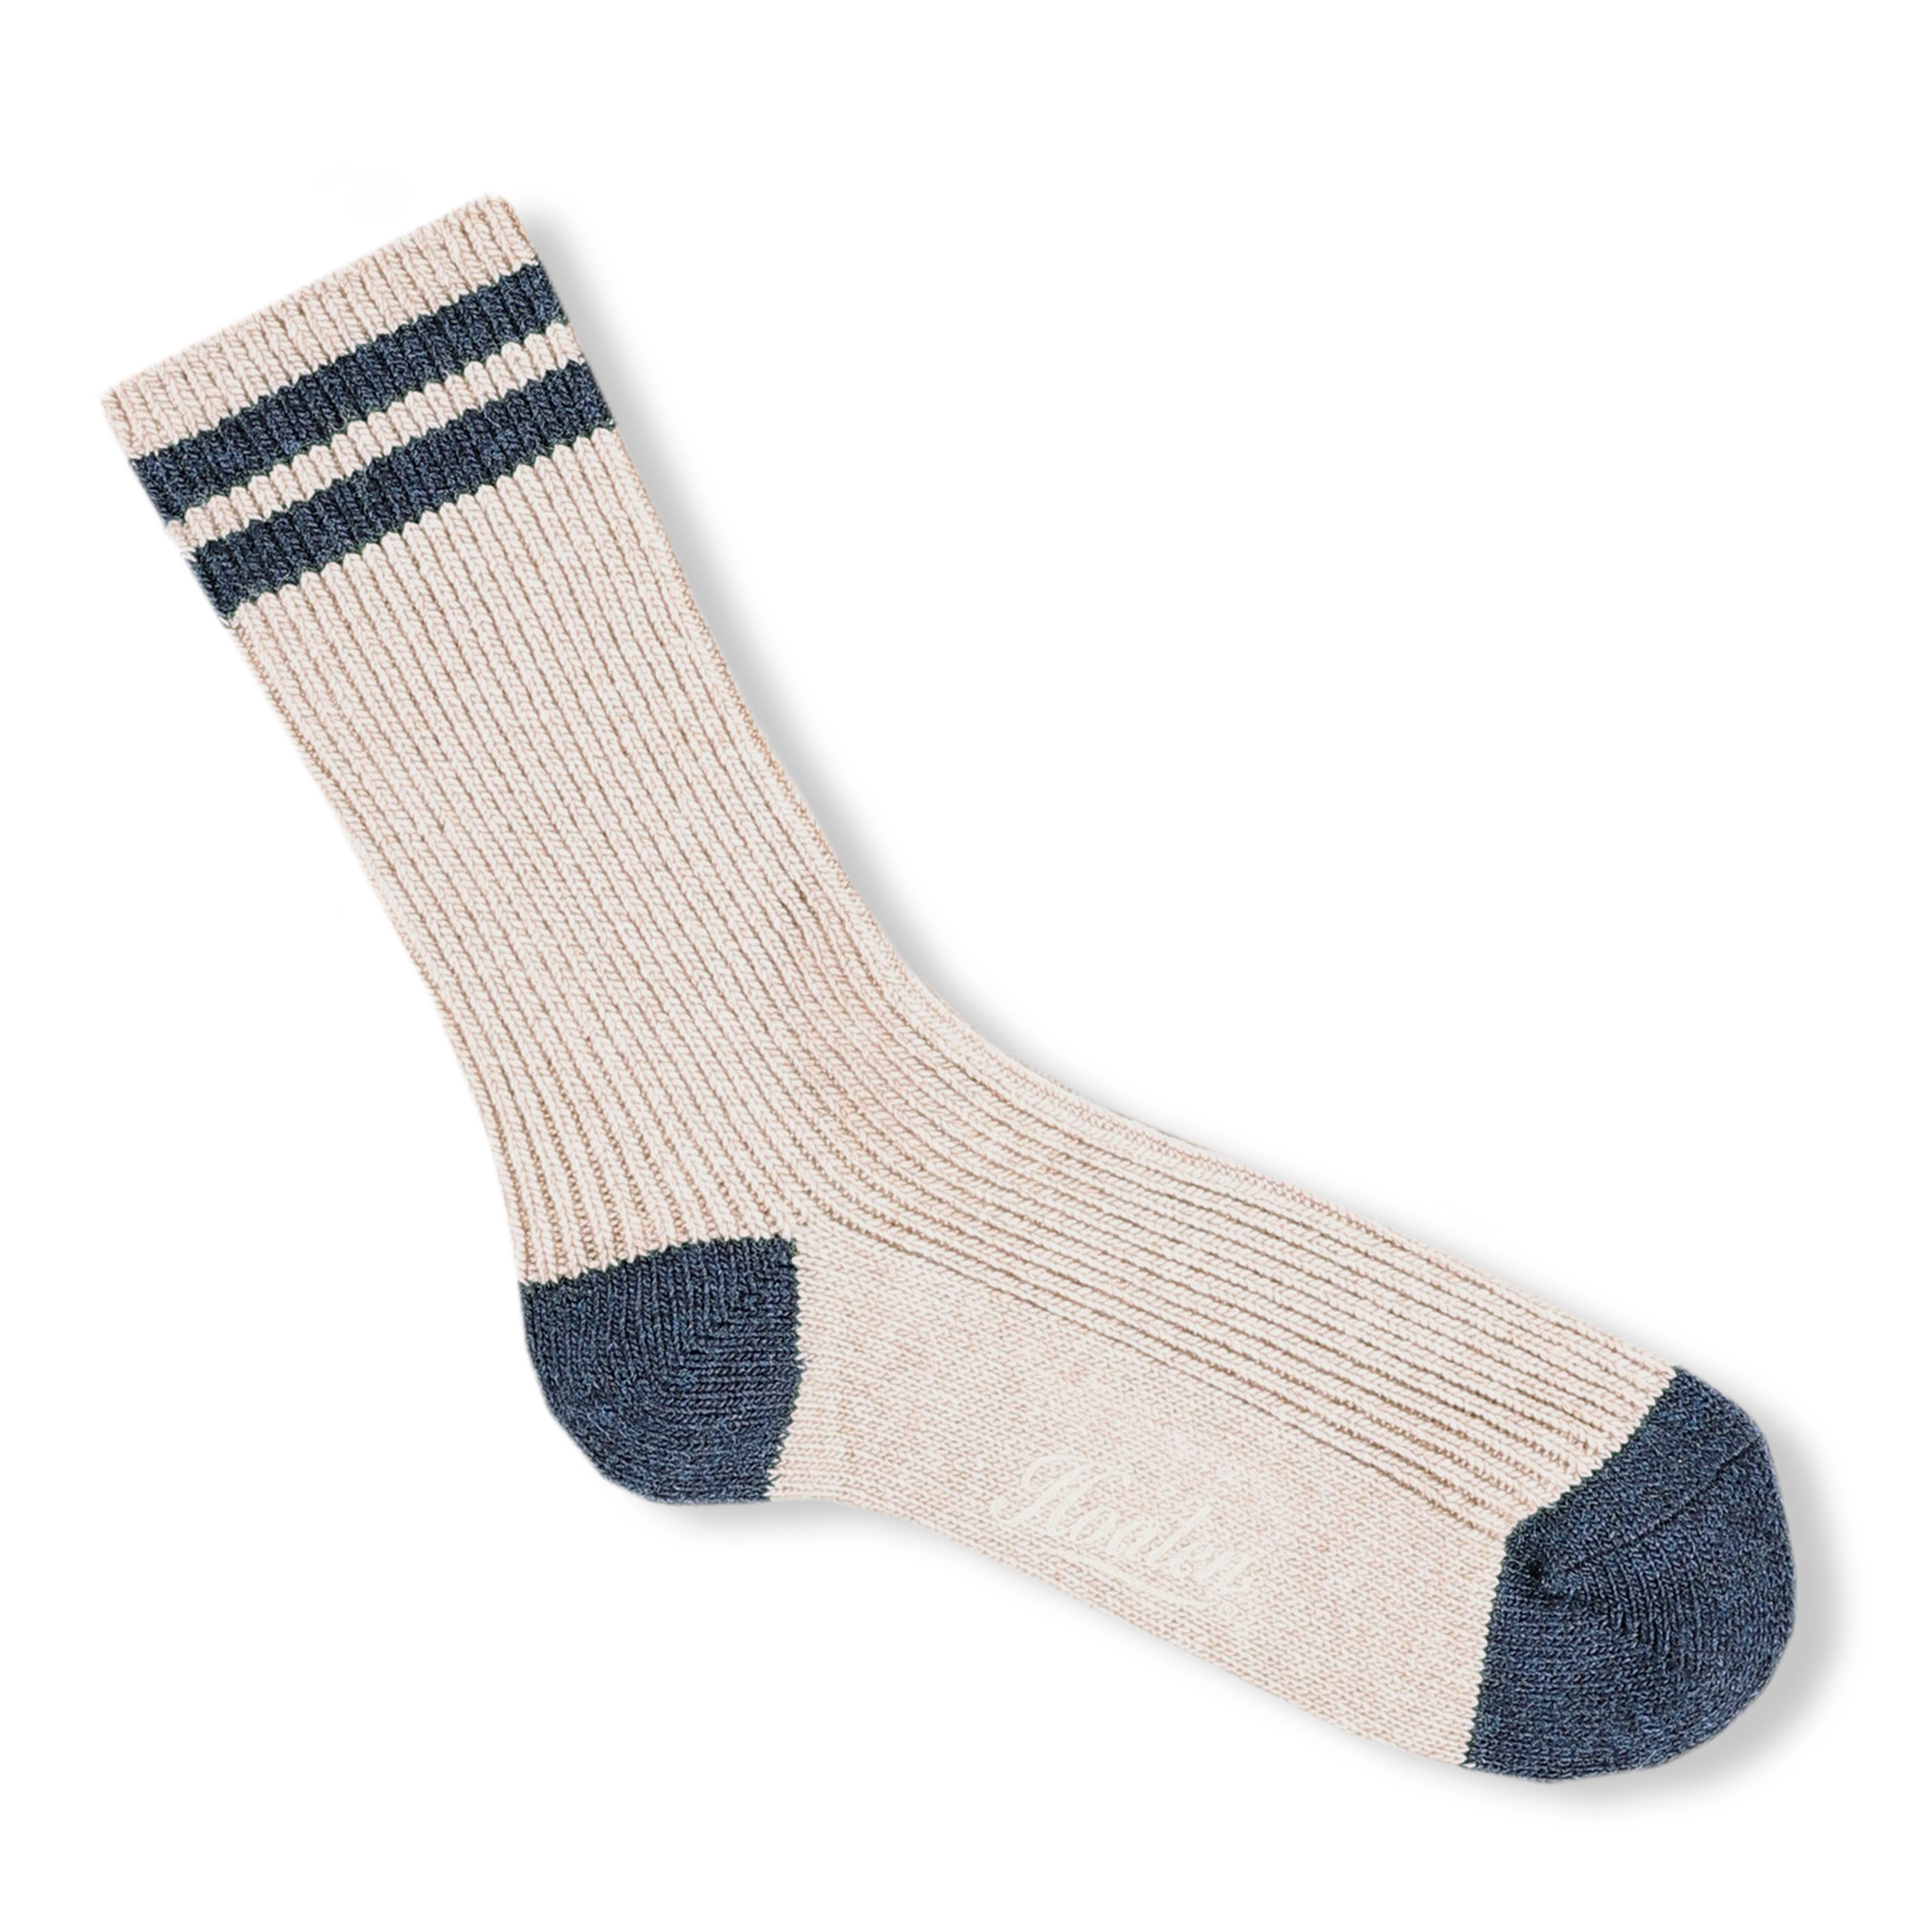 Half-high socks